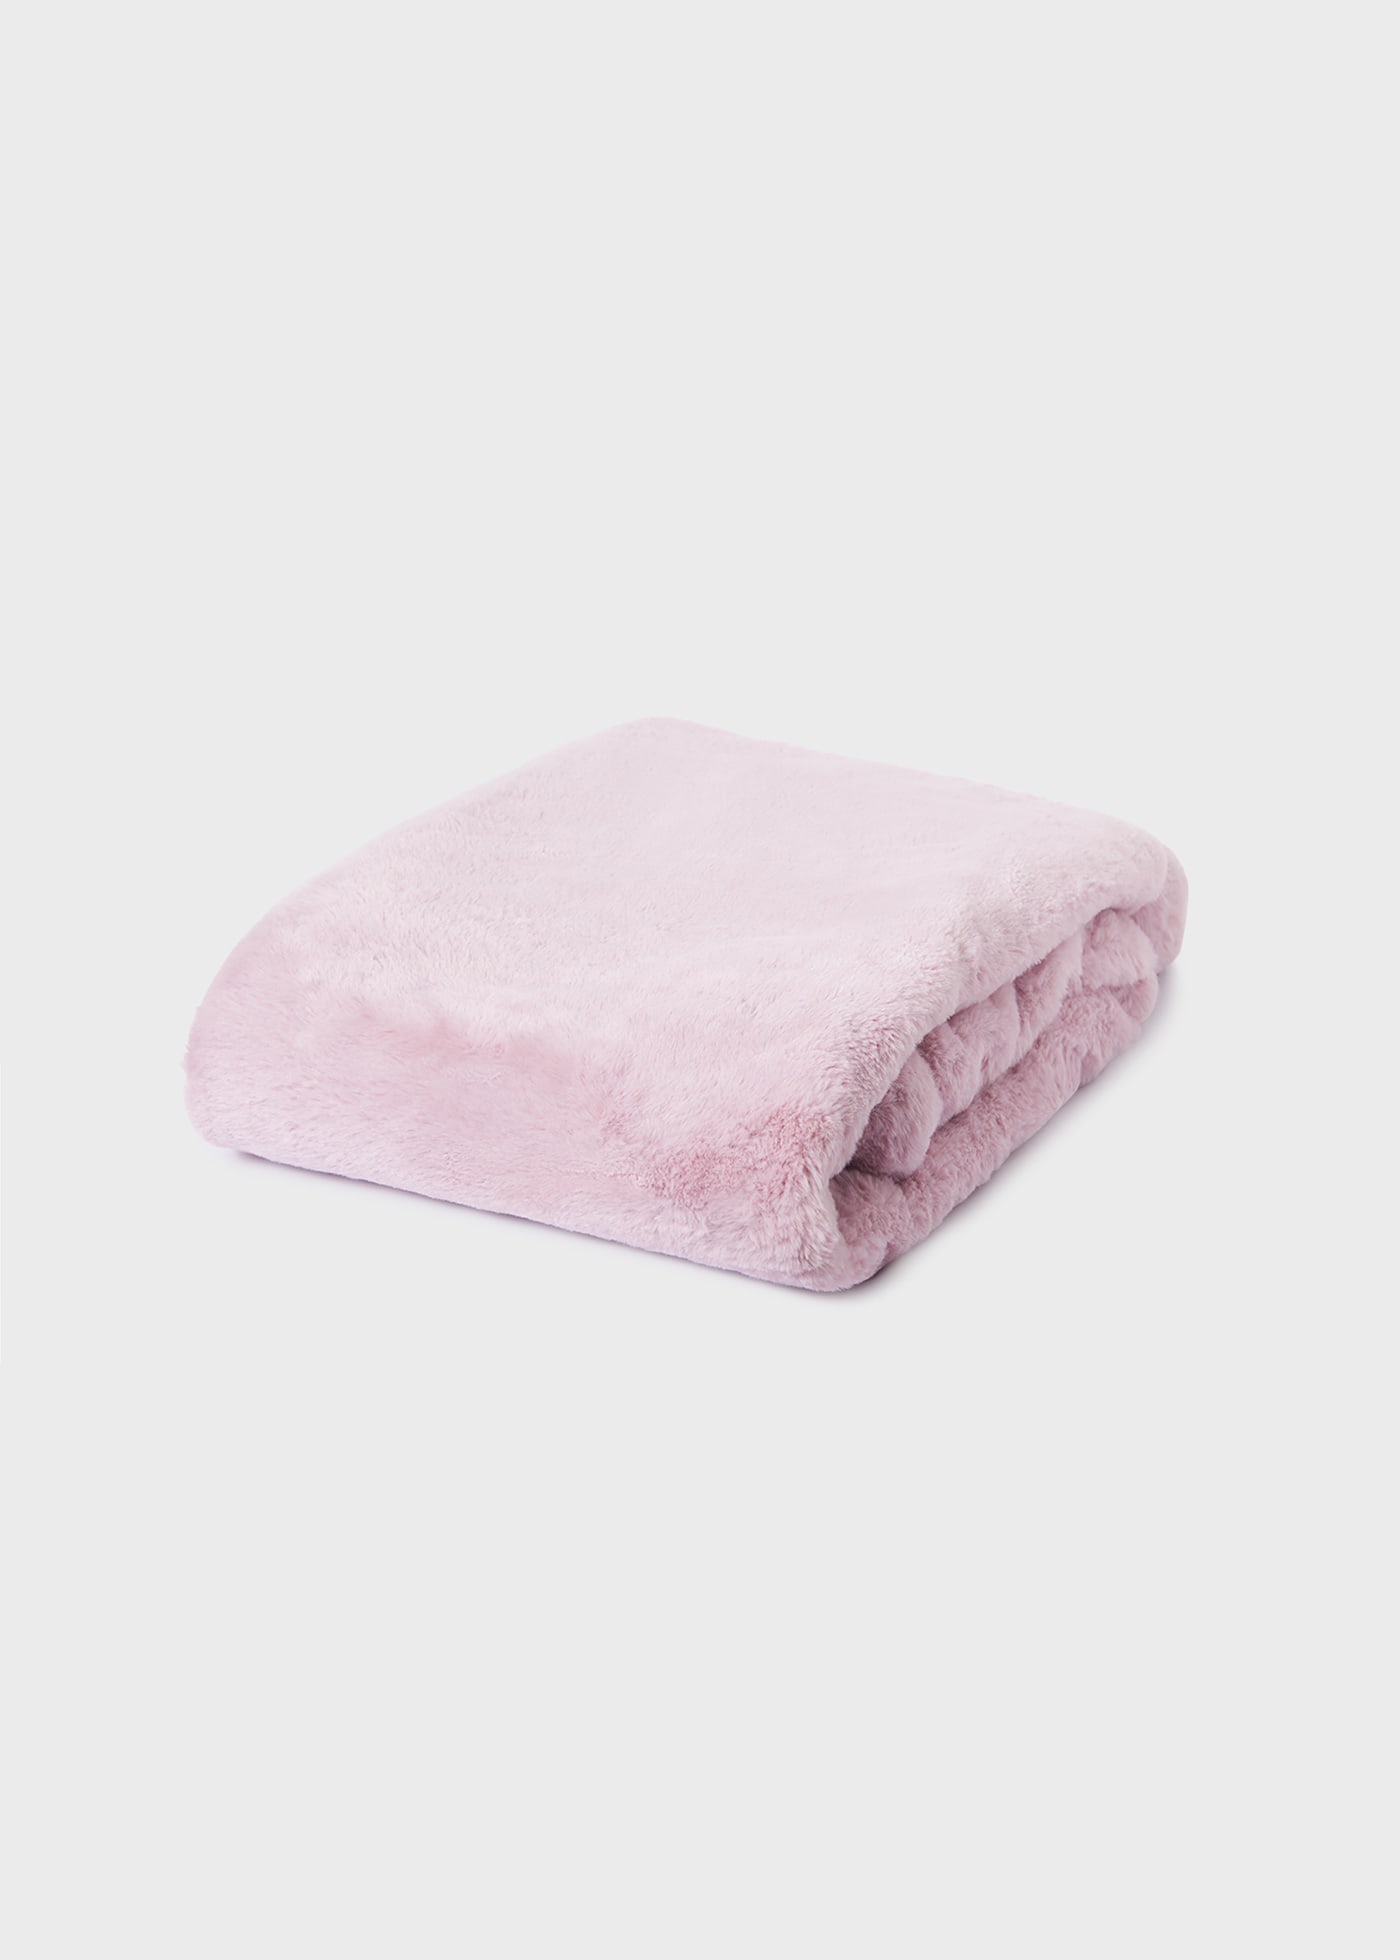 Baby pompom blanket